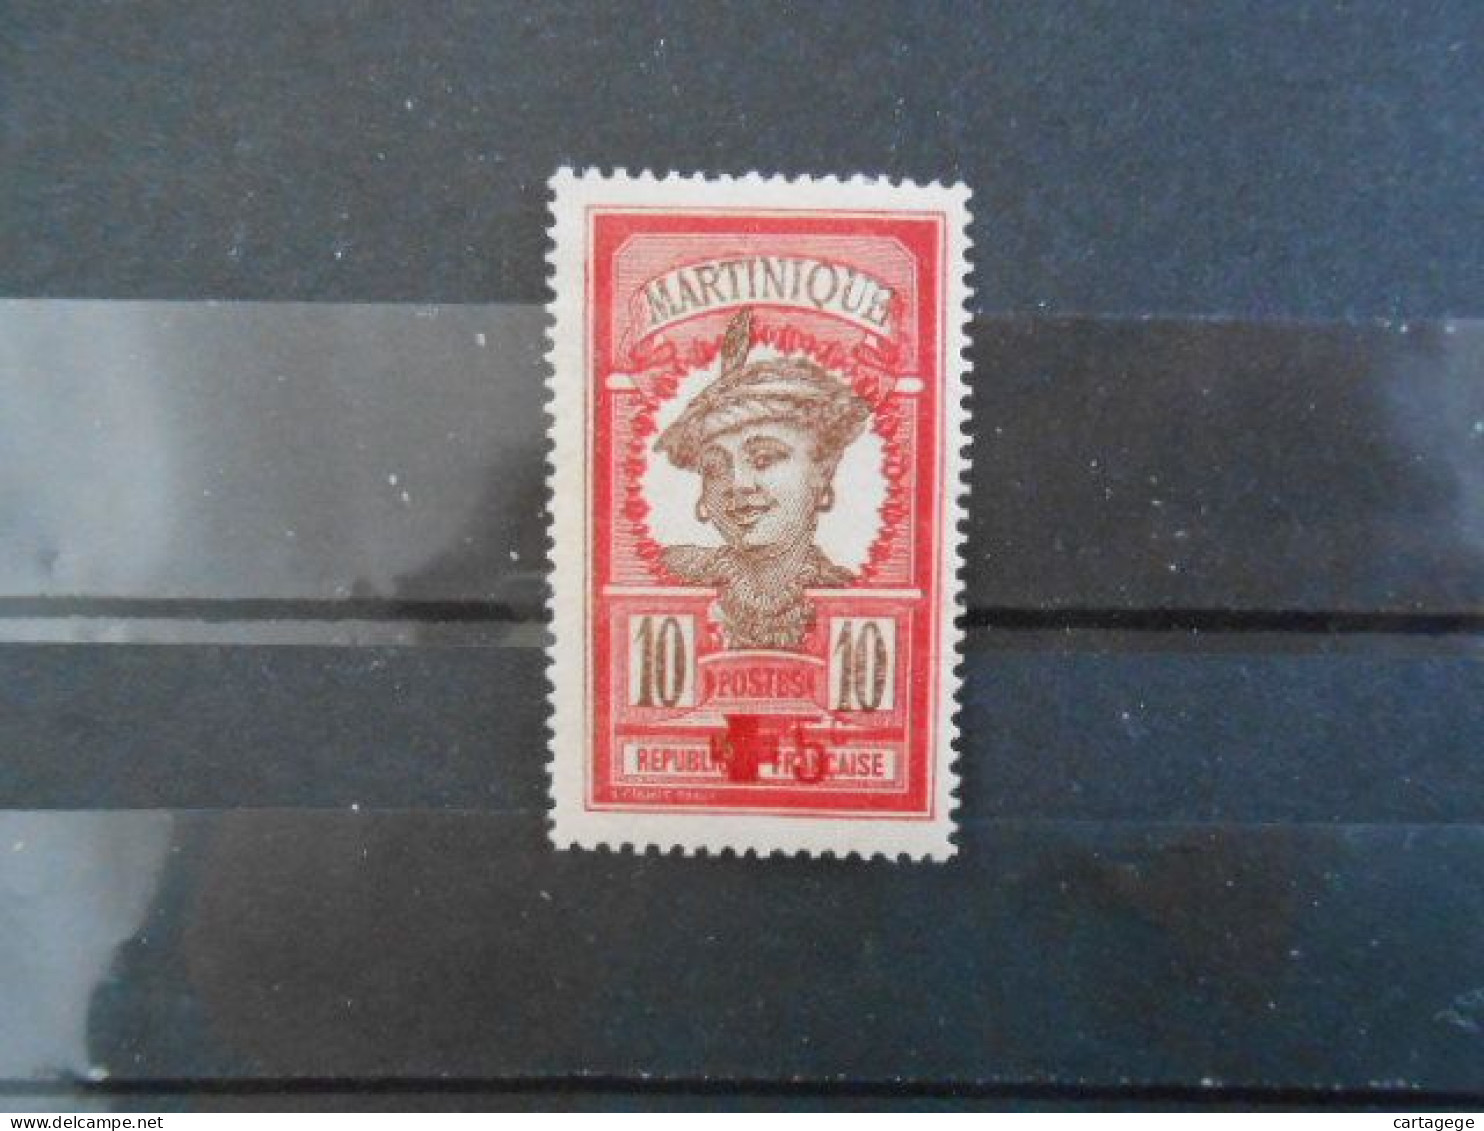 MARTINIQUE YT 82 AU PROFIT DE LA CROIX-ROUGE* - Unused Stamps